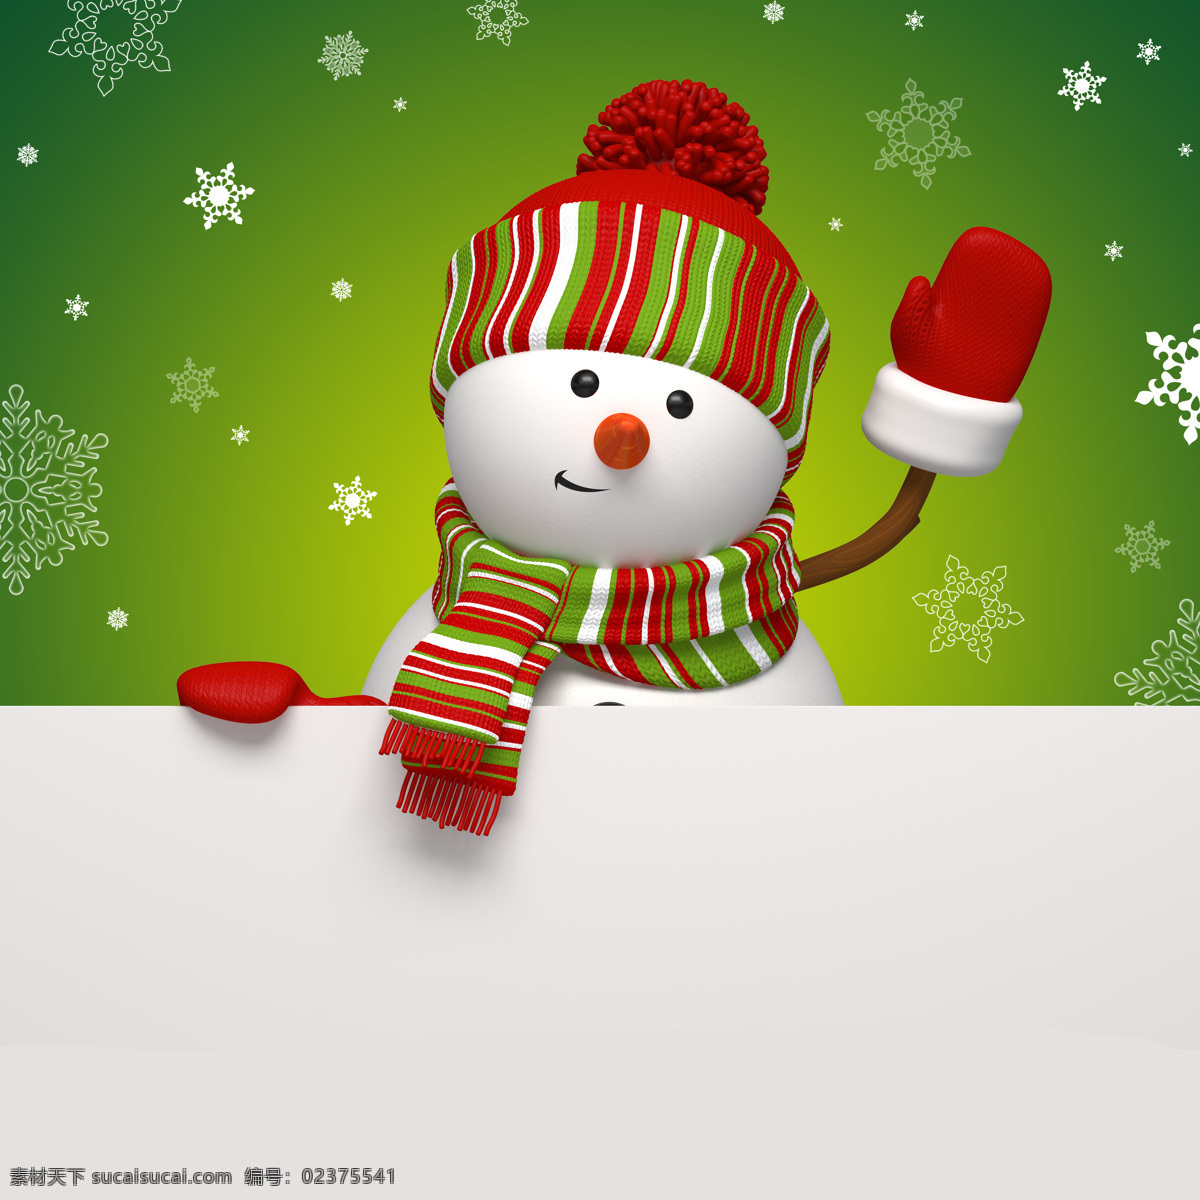 圣诞雪人 圣诞 雪人 帽子 围巾 手套 雪花 圣诞背景 圣诞节 圣诞快乐 节日庆祝 文化艺术